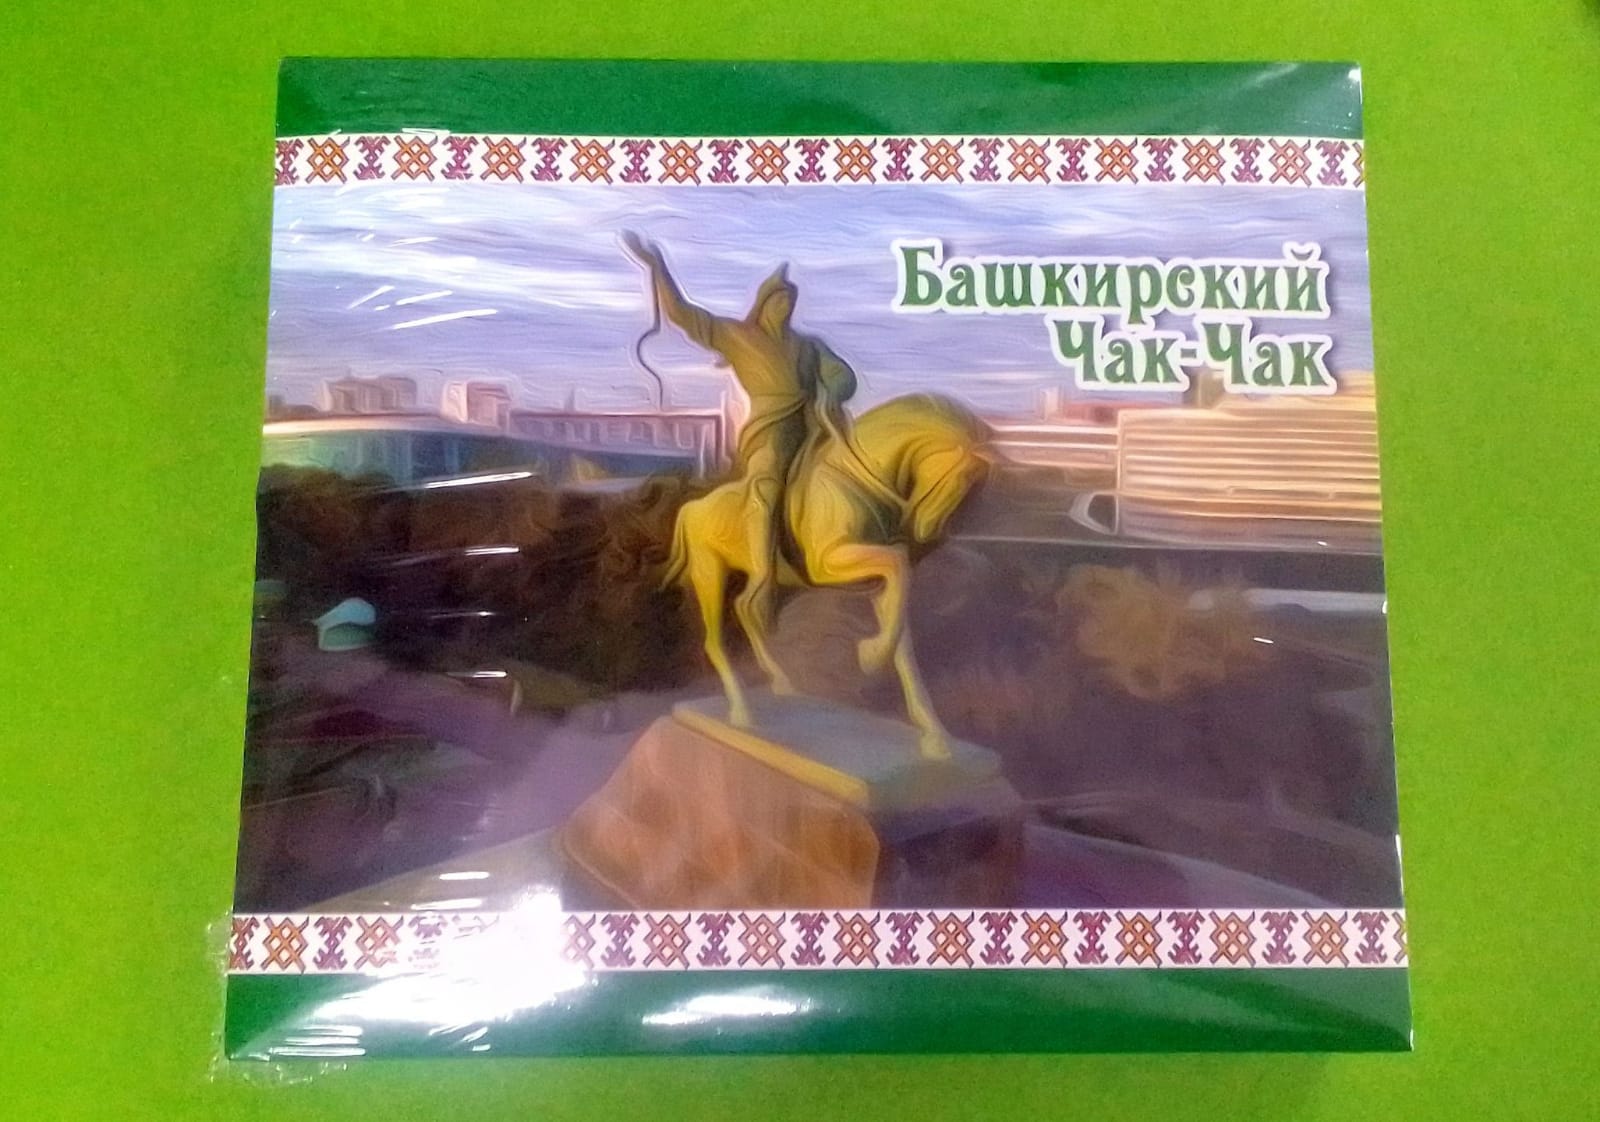 Чак-чак "Башкирский сувенир" зелёная коробка